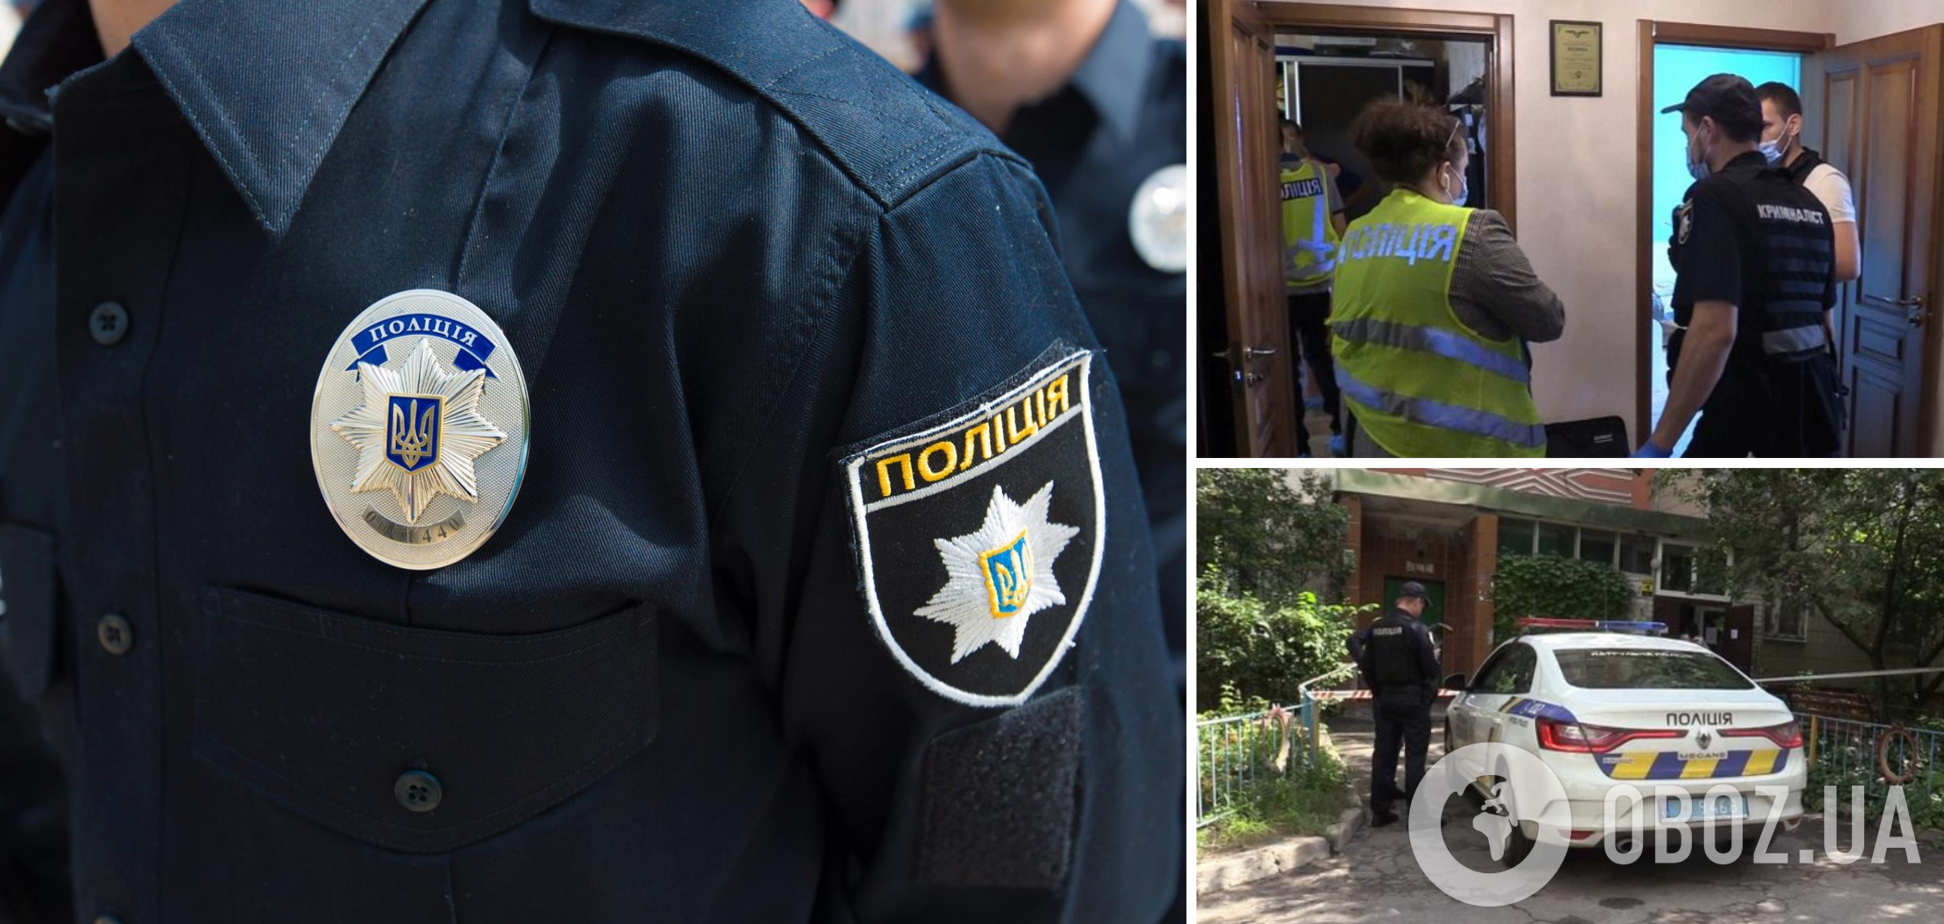 Затримано підозрюваного у жорстокому вбивстві жінки в Києві. Фото та відео